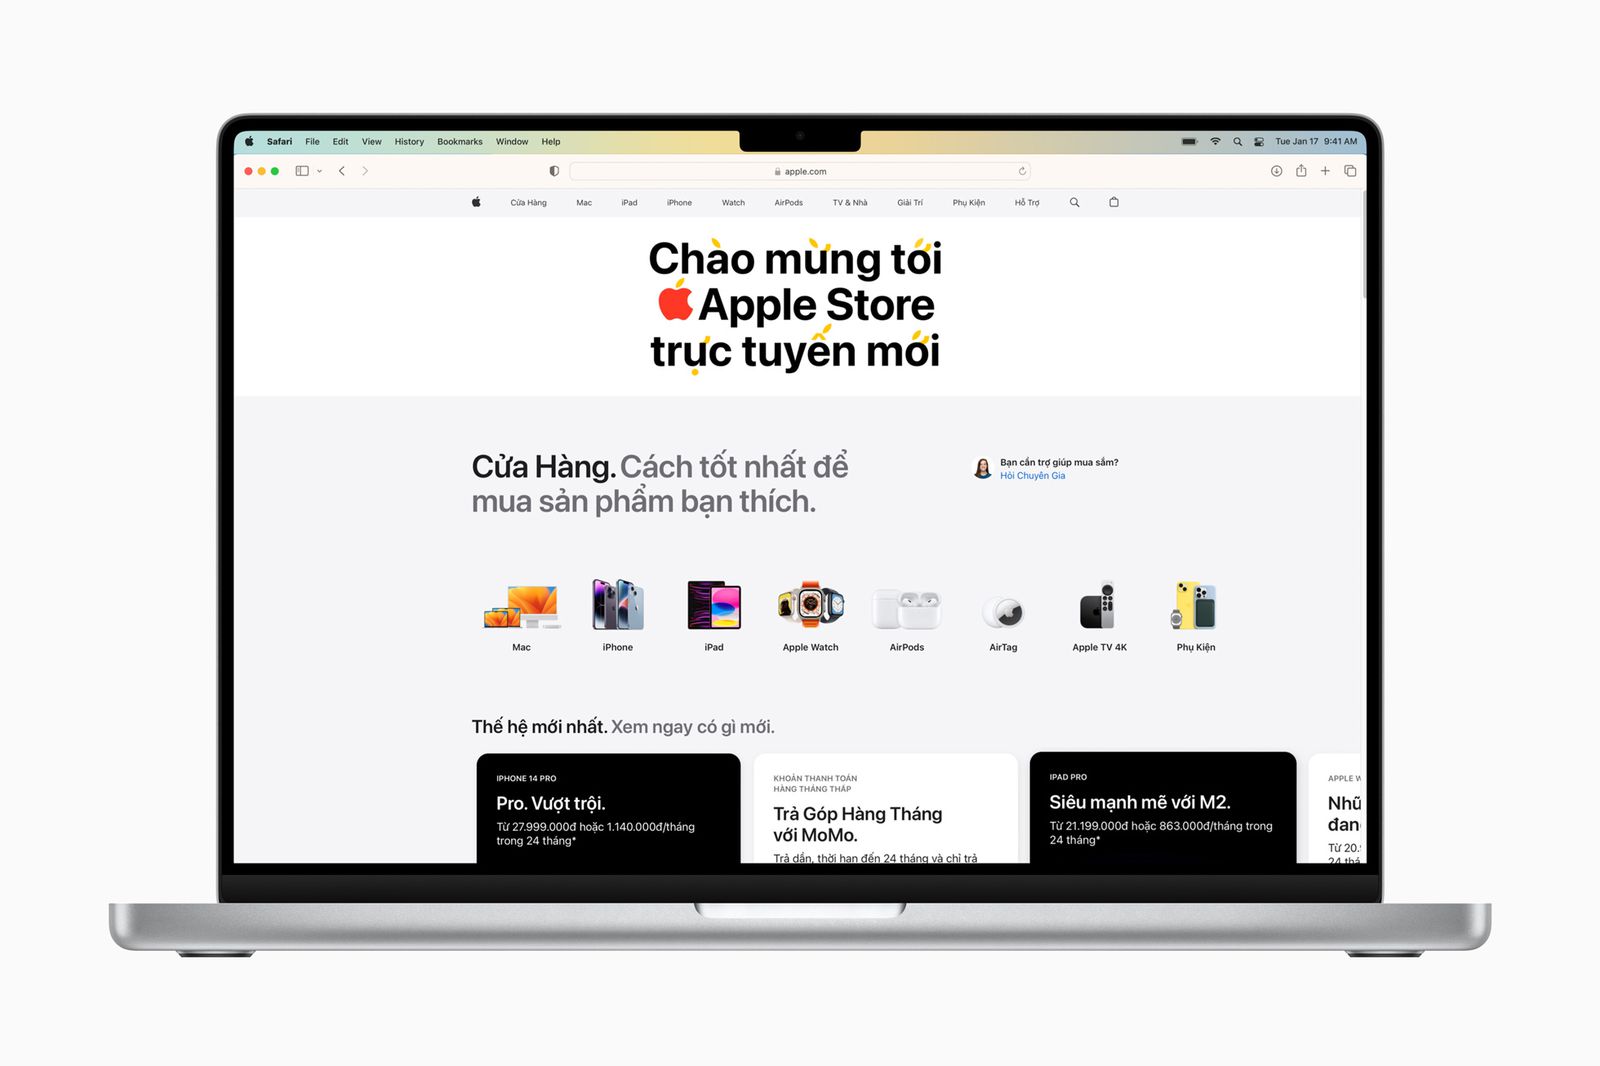 Интернет-магазин Apple начал работу во Вьетнаме